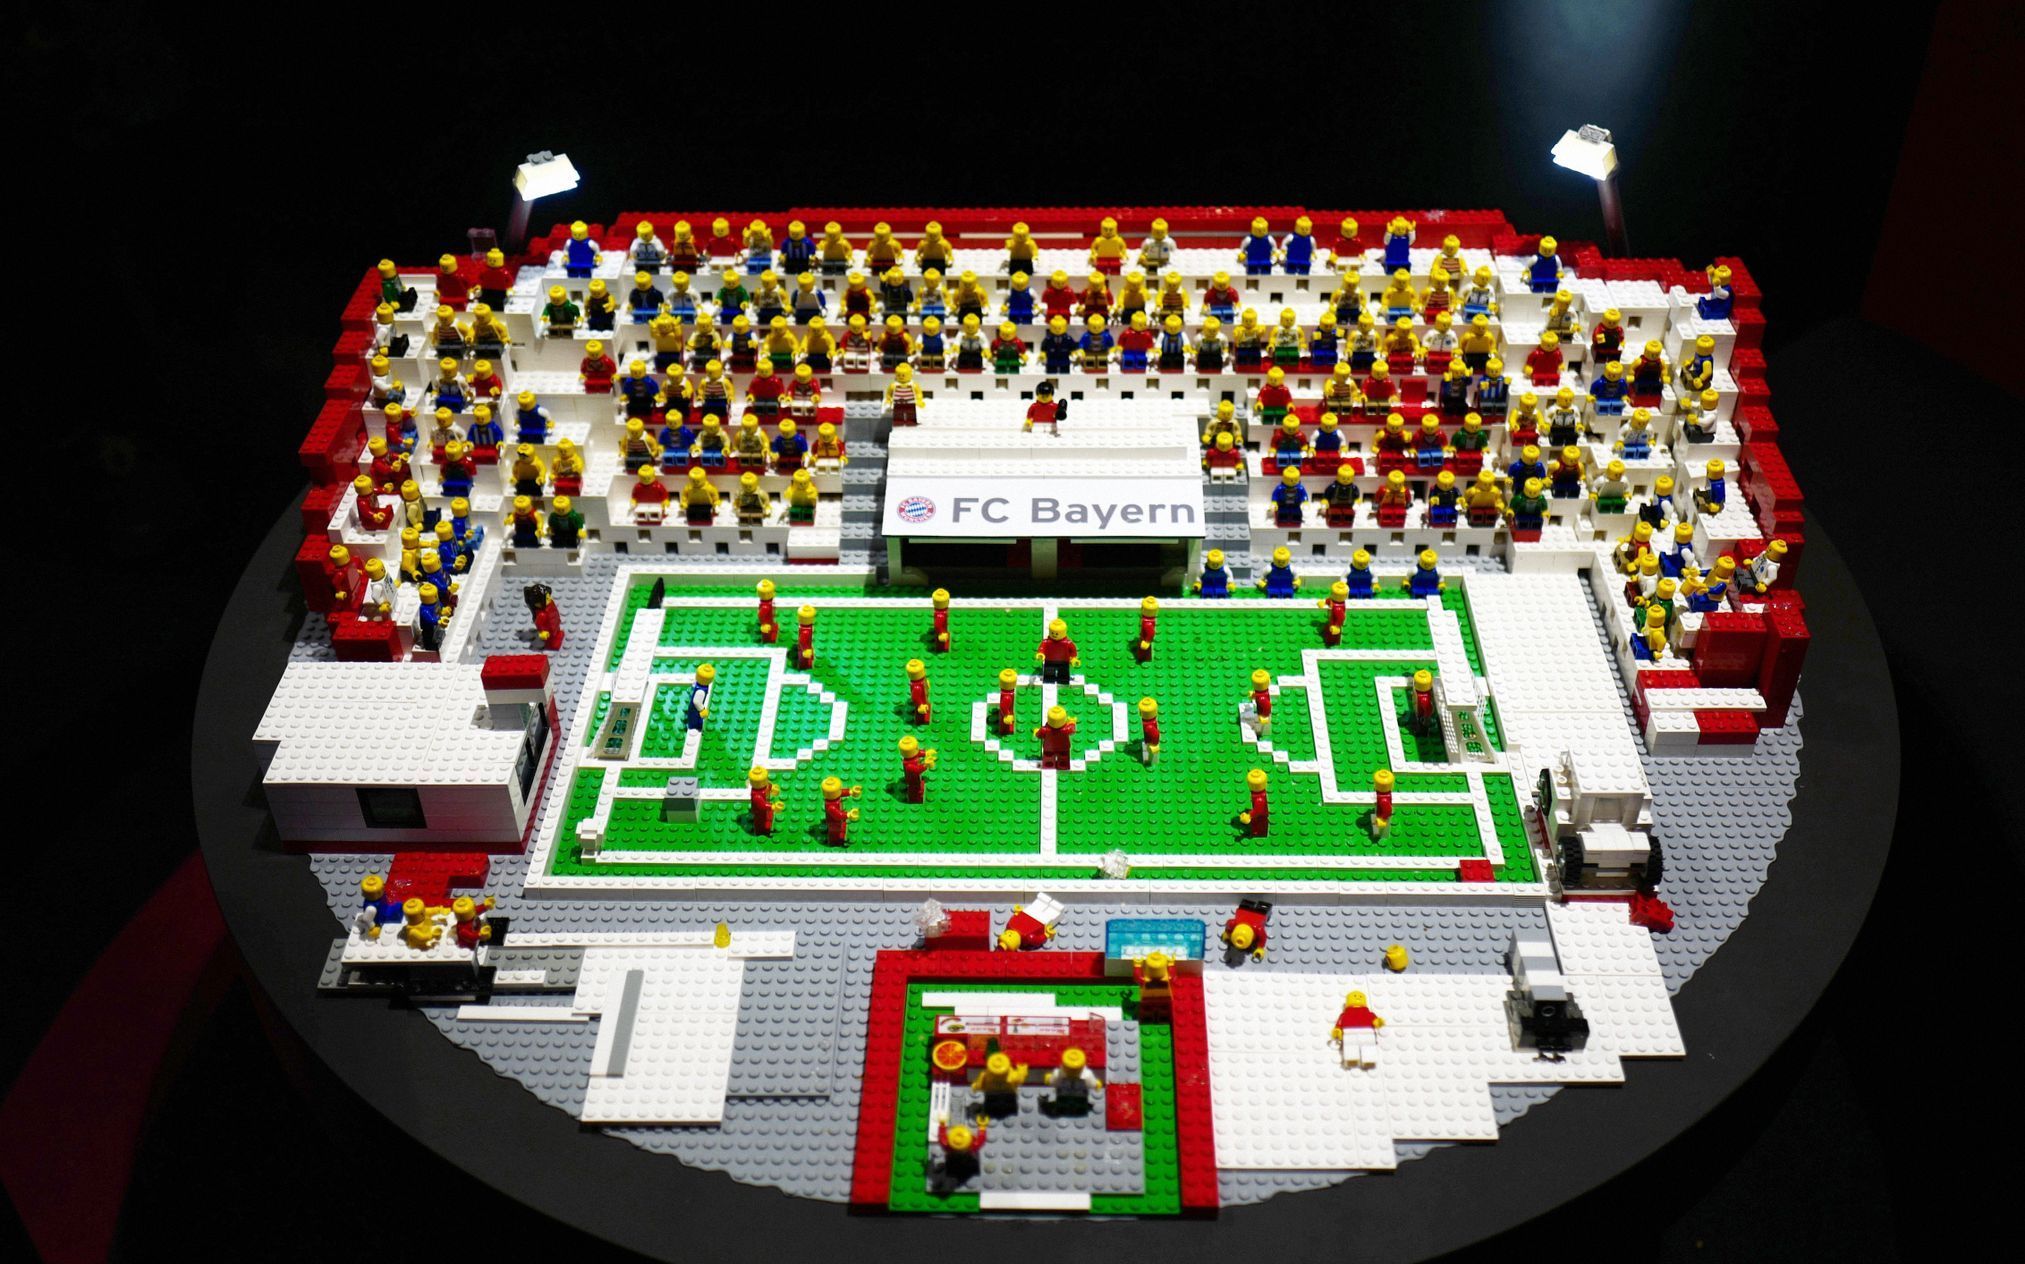 Fotogalerie/ Lego / Fenomenální stavebnice plná superlativ. Podívejte se na dech beroucí výtvory z Lega